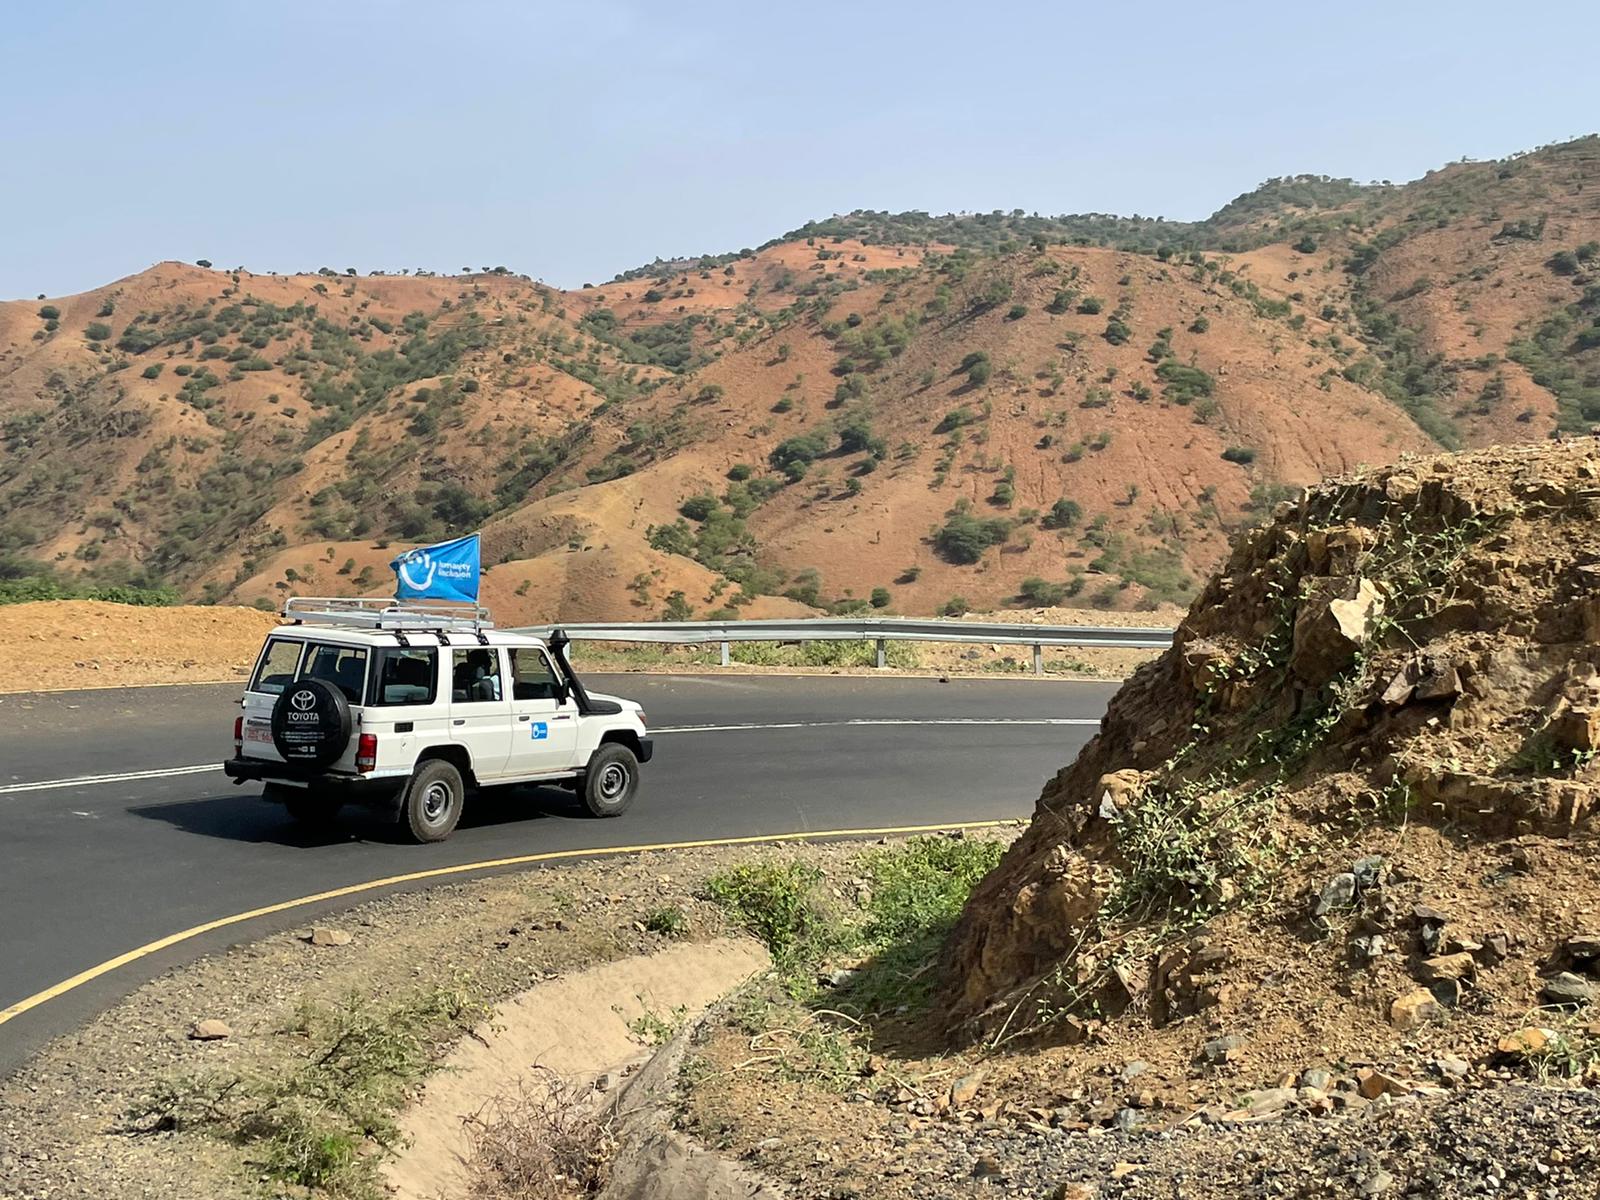 HI-Fahrzeuge auf dem Weg in die Region Tigray, um humanitäre Hilfe zu leisten.